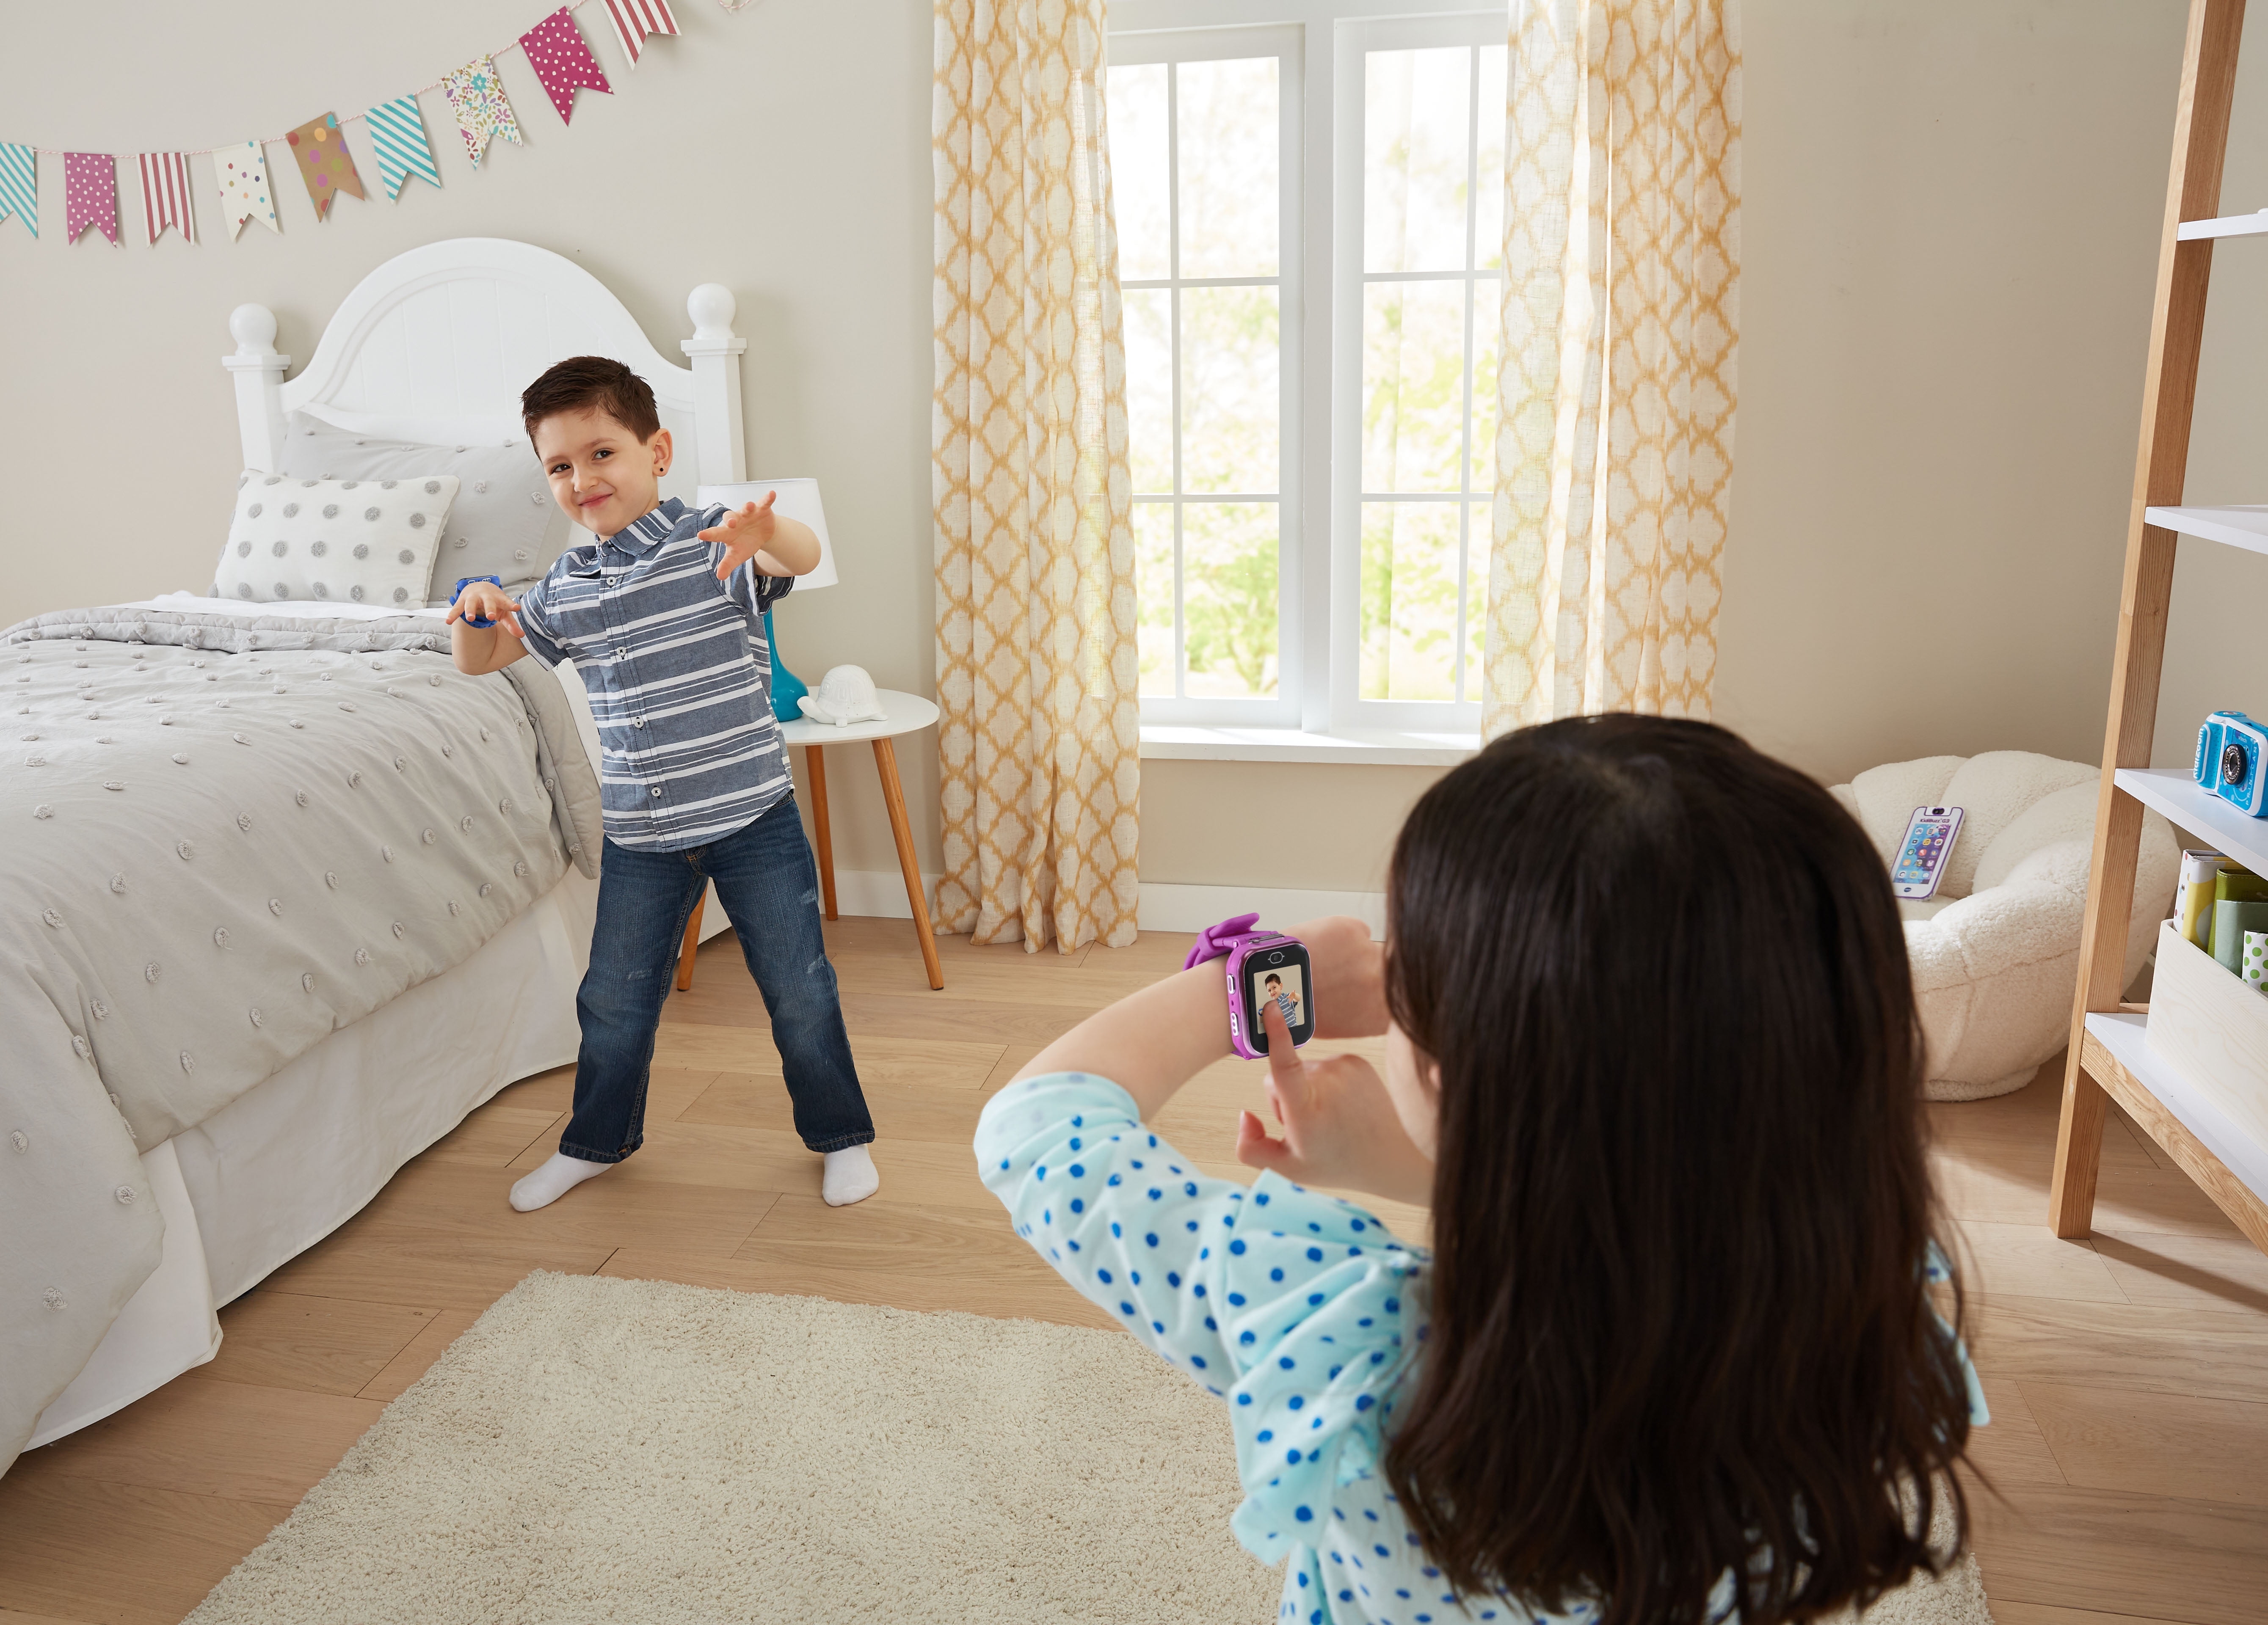 VTech KidiZoom Smartwatch DX3 avec deux appareils photo, lumière à DEL et  flash, jumelage sécurisé des montres, effets photo et vidéo, jeux, batterie  rechargeable intégrée, enfants de 4 ans+ 4+ Ans 